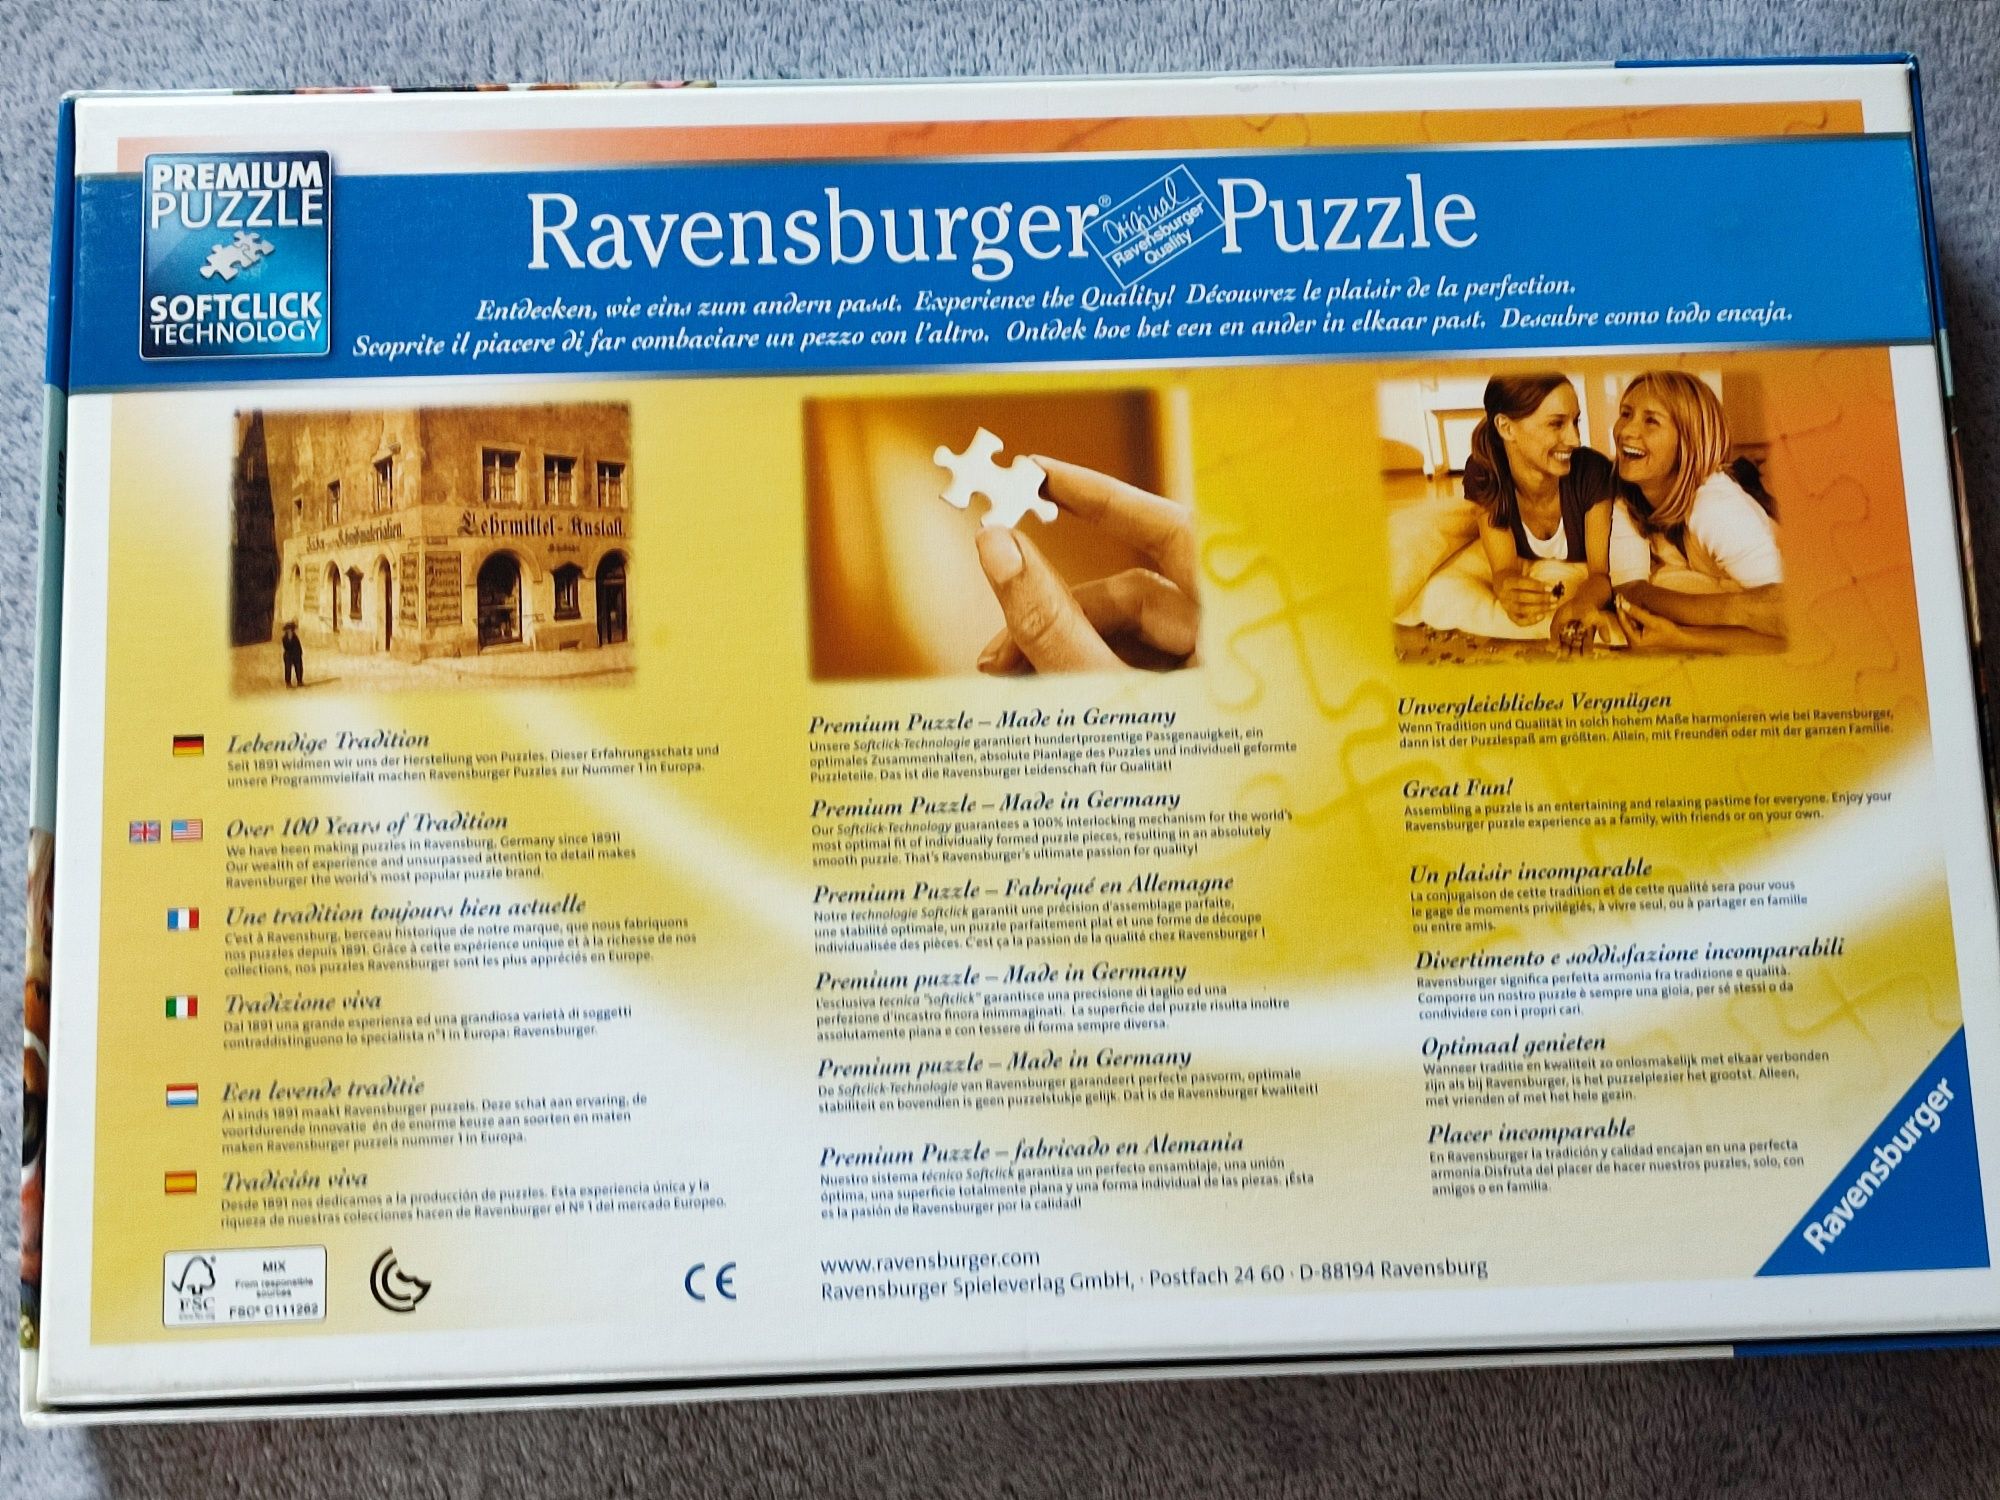 Puzzle Ravensburger Selfie na farmie Wesołe konie 498 klocków